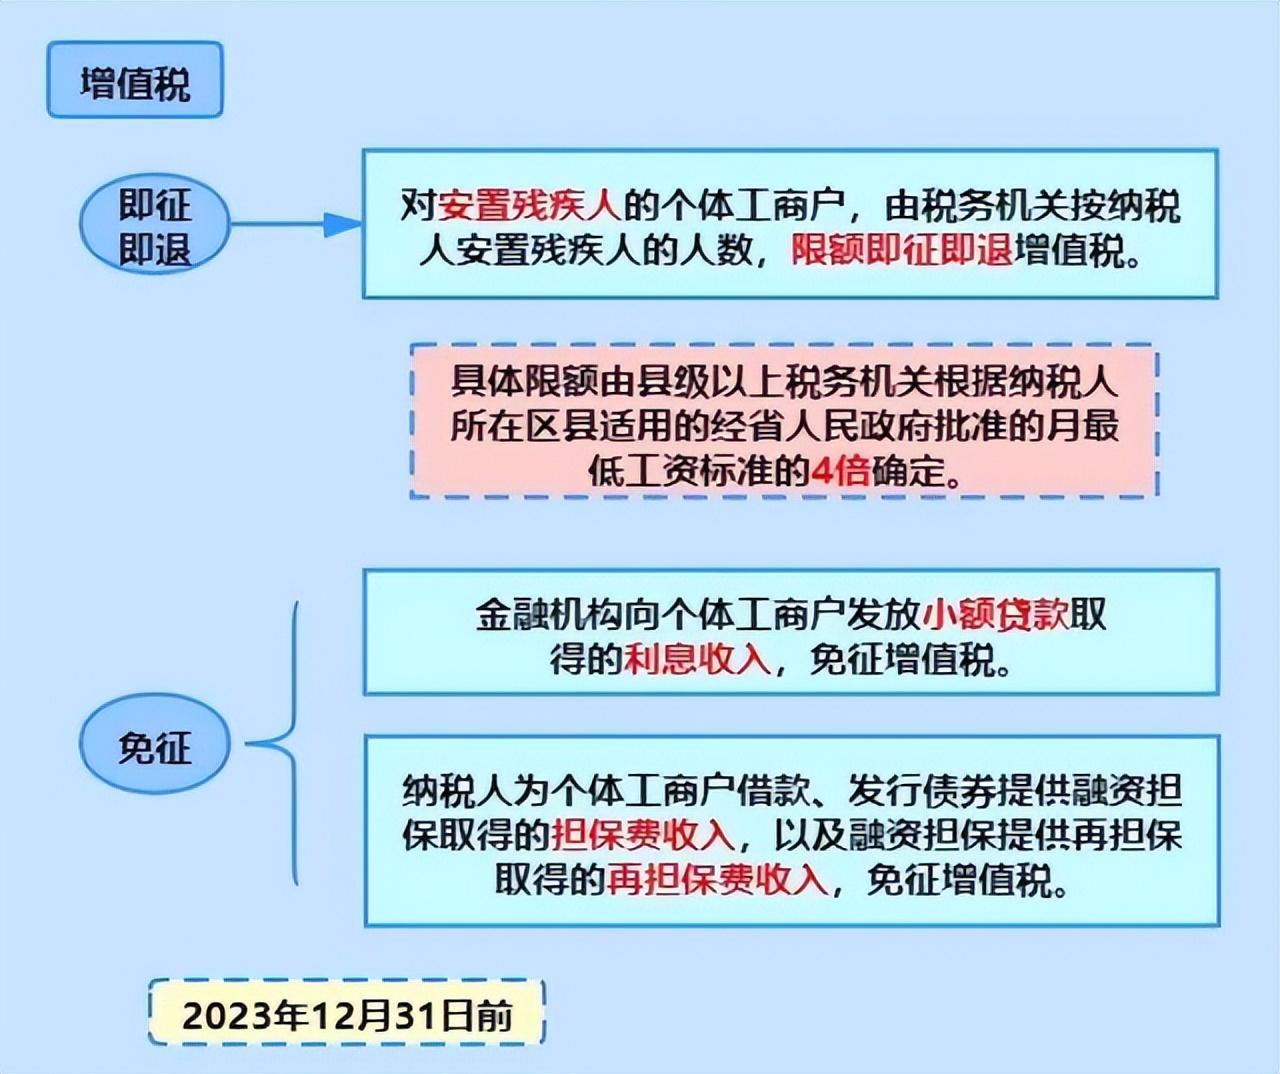 江苏个体工商户核定征收政策,近期表述